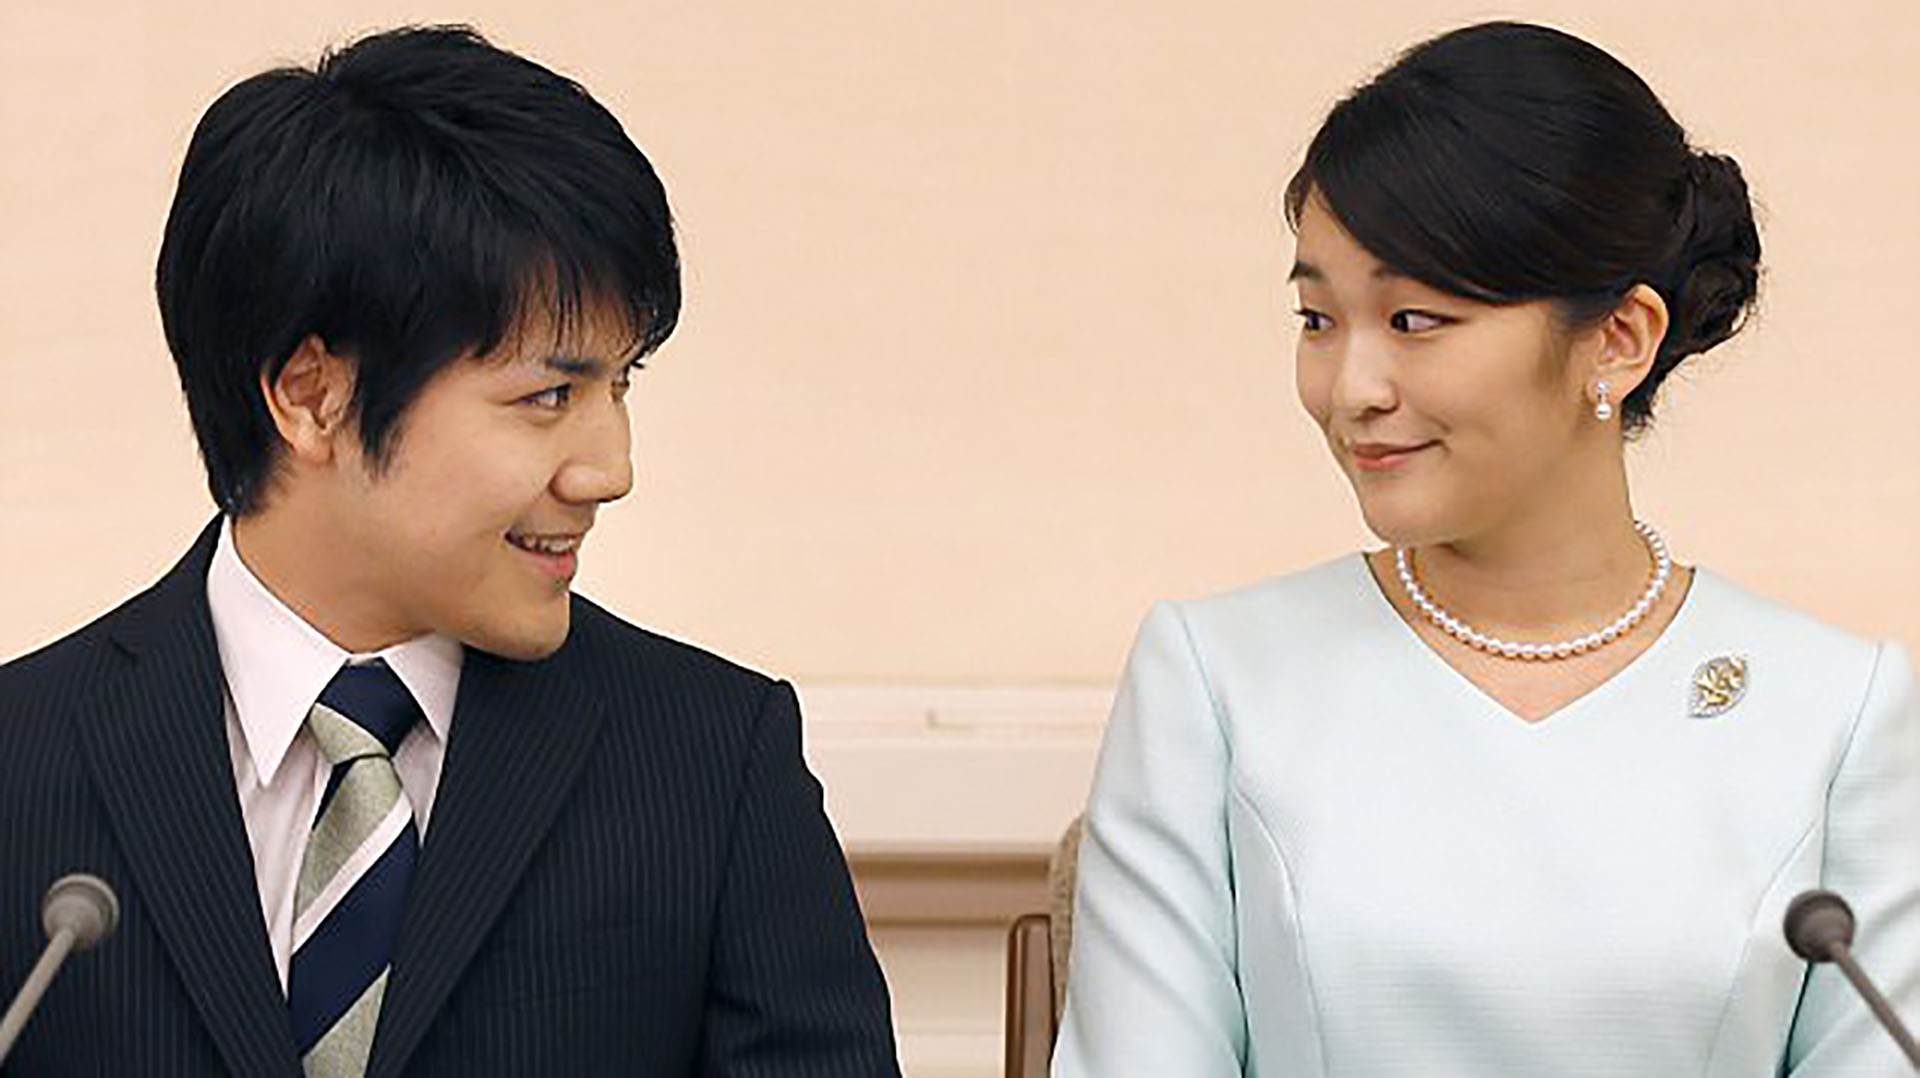 La princesa Mako y su prometido, Kei Komuro, en la pedida de mano celebrada en el Palacio de Akasawa el 3 de septiembre de 2017 (Foto: EPA)